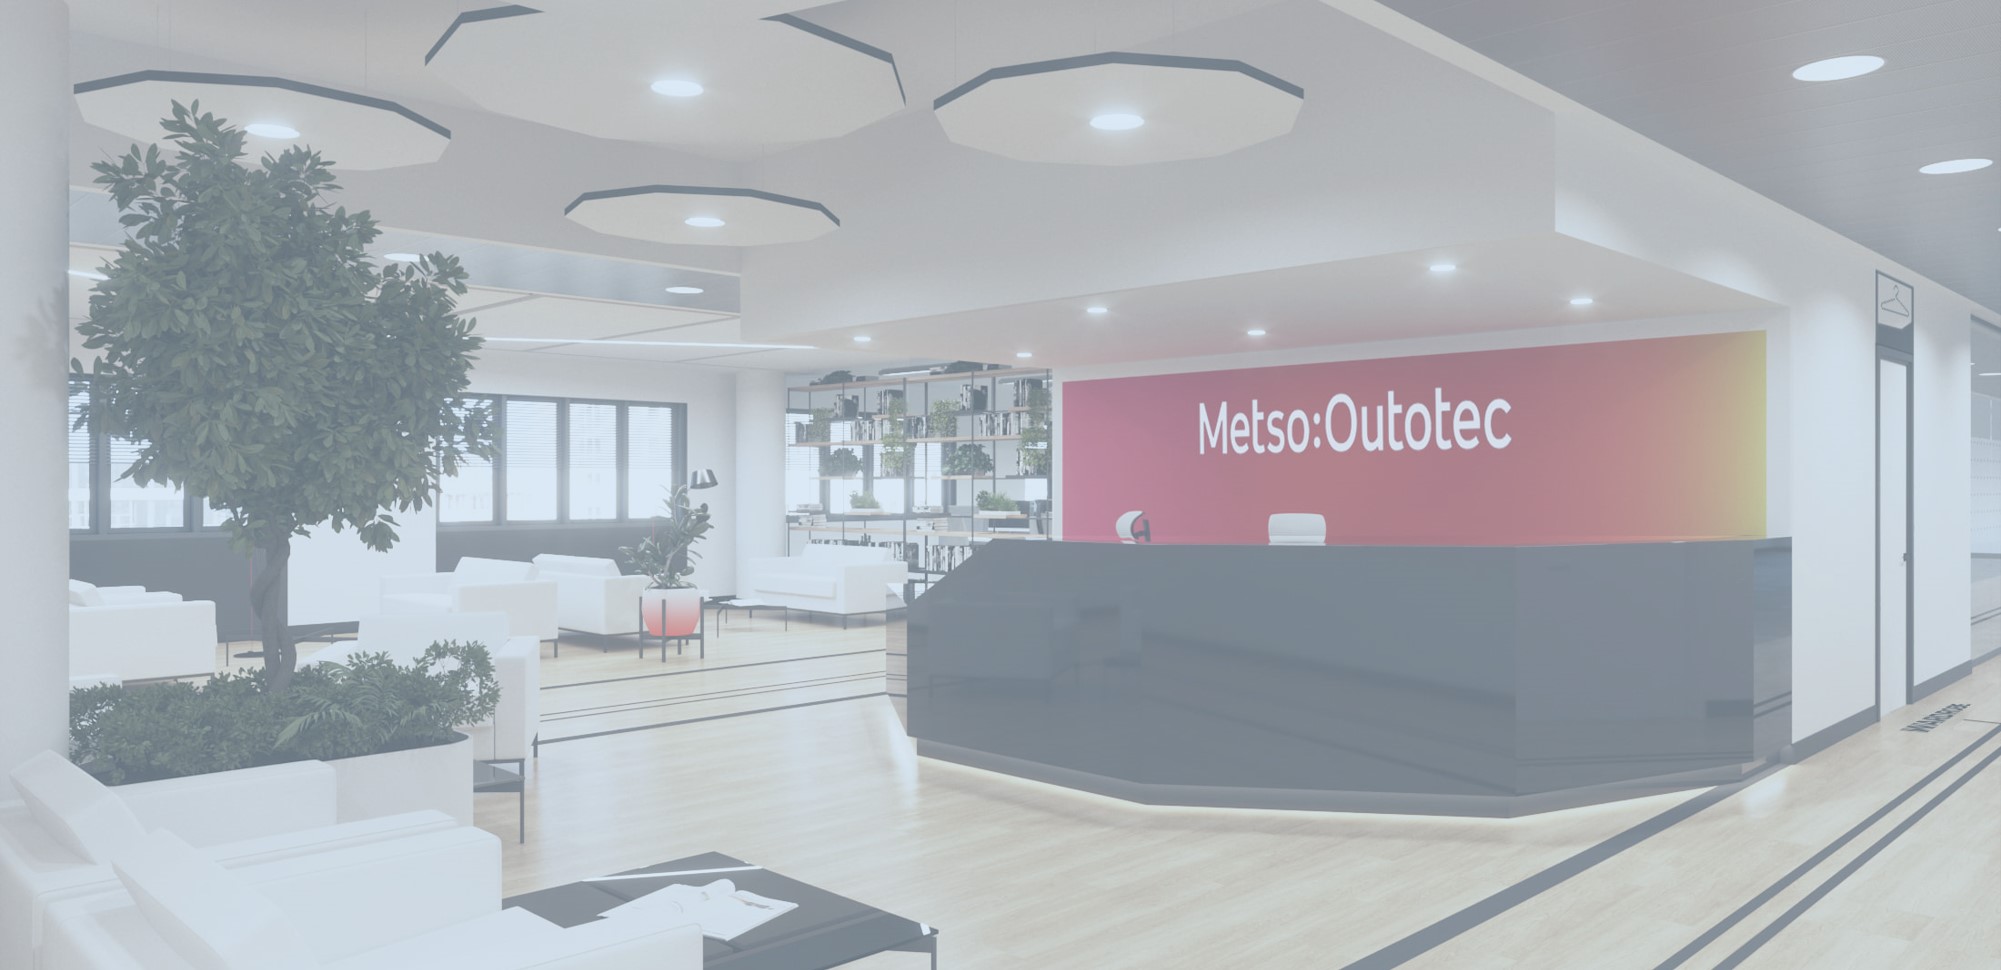 Оформление интерьера офиса финской компании Metso&Outotec: цветные зоны, стойка ресепшн из камня и другие нестандартные решения 